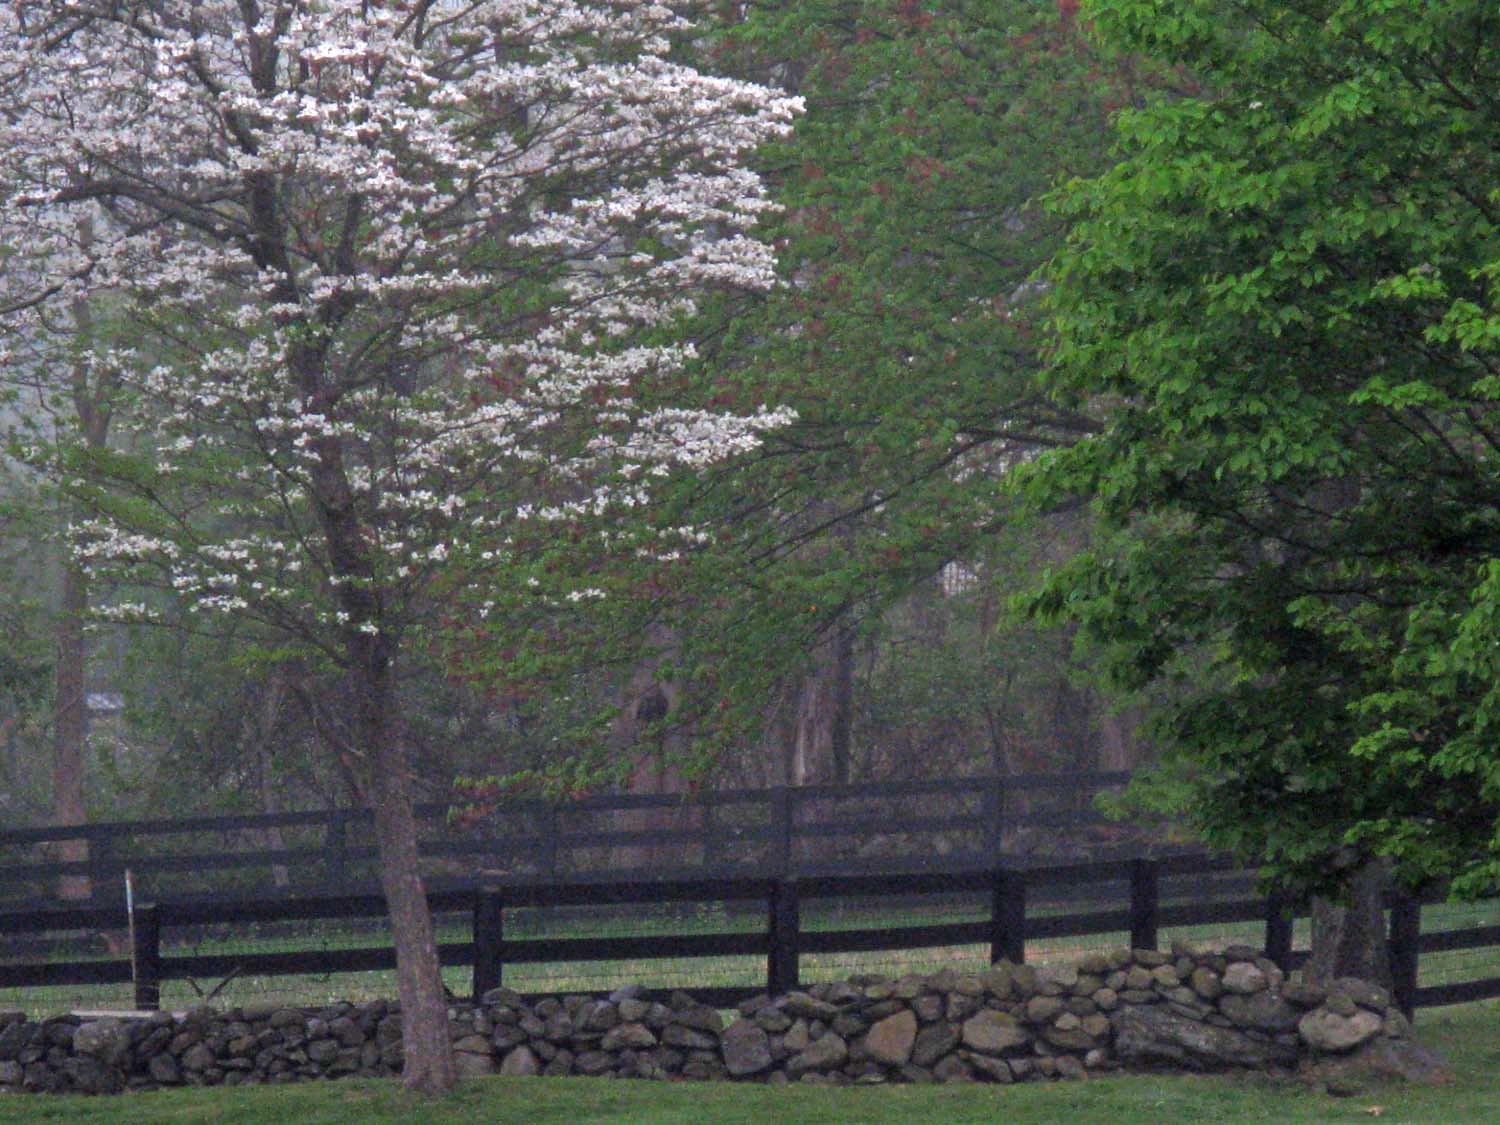 Dogwood in bloom near paddock